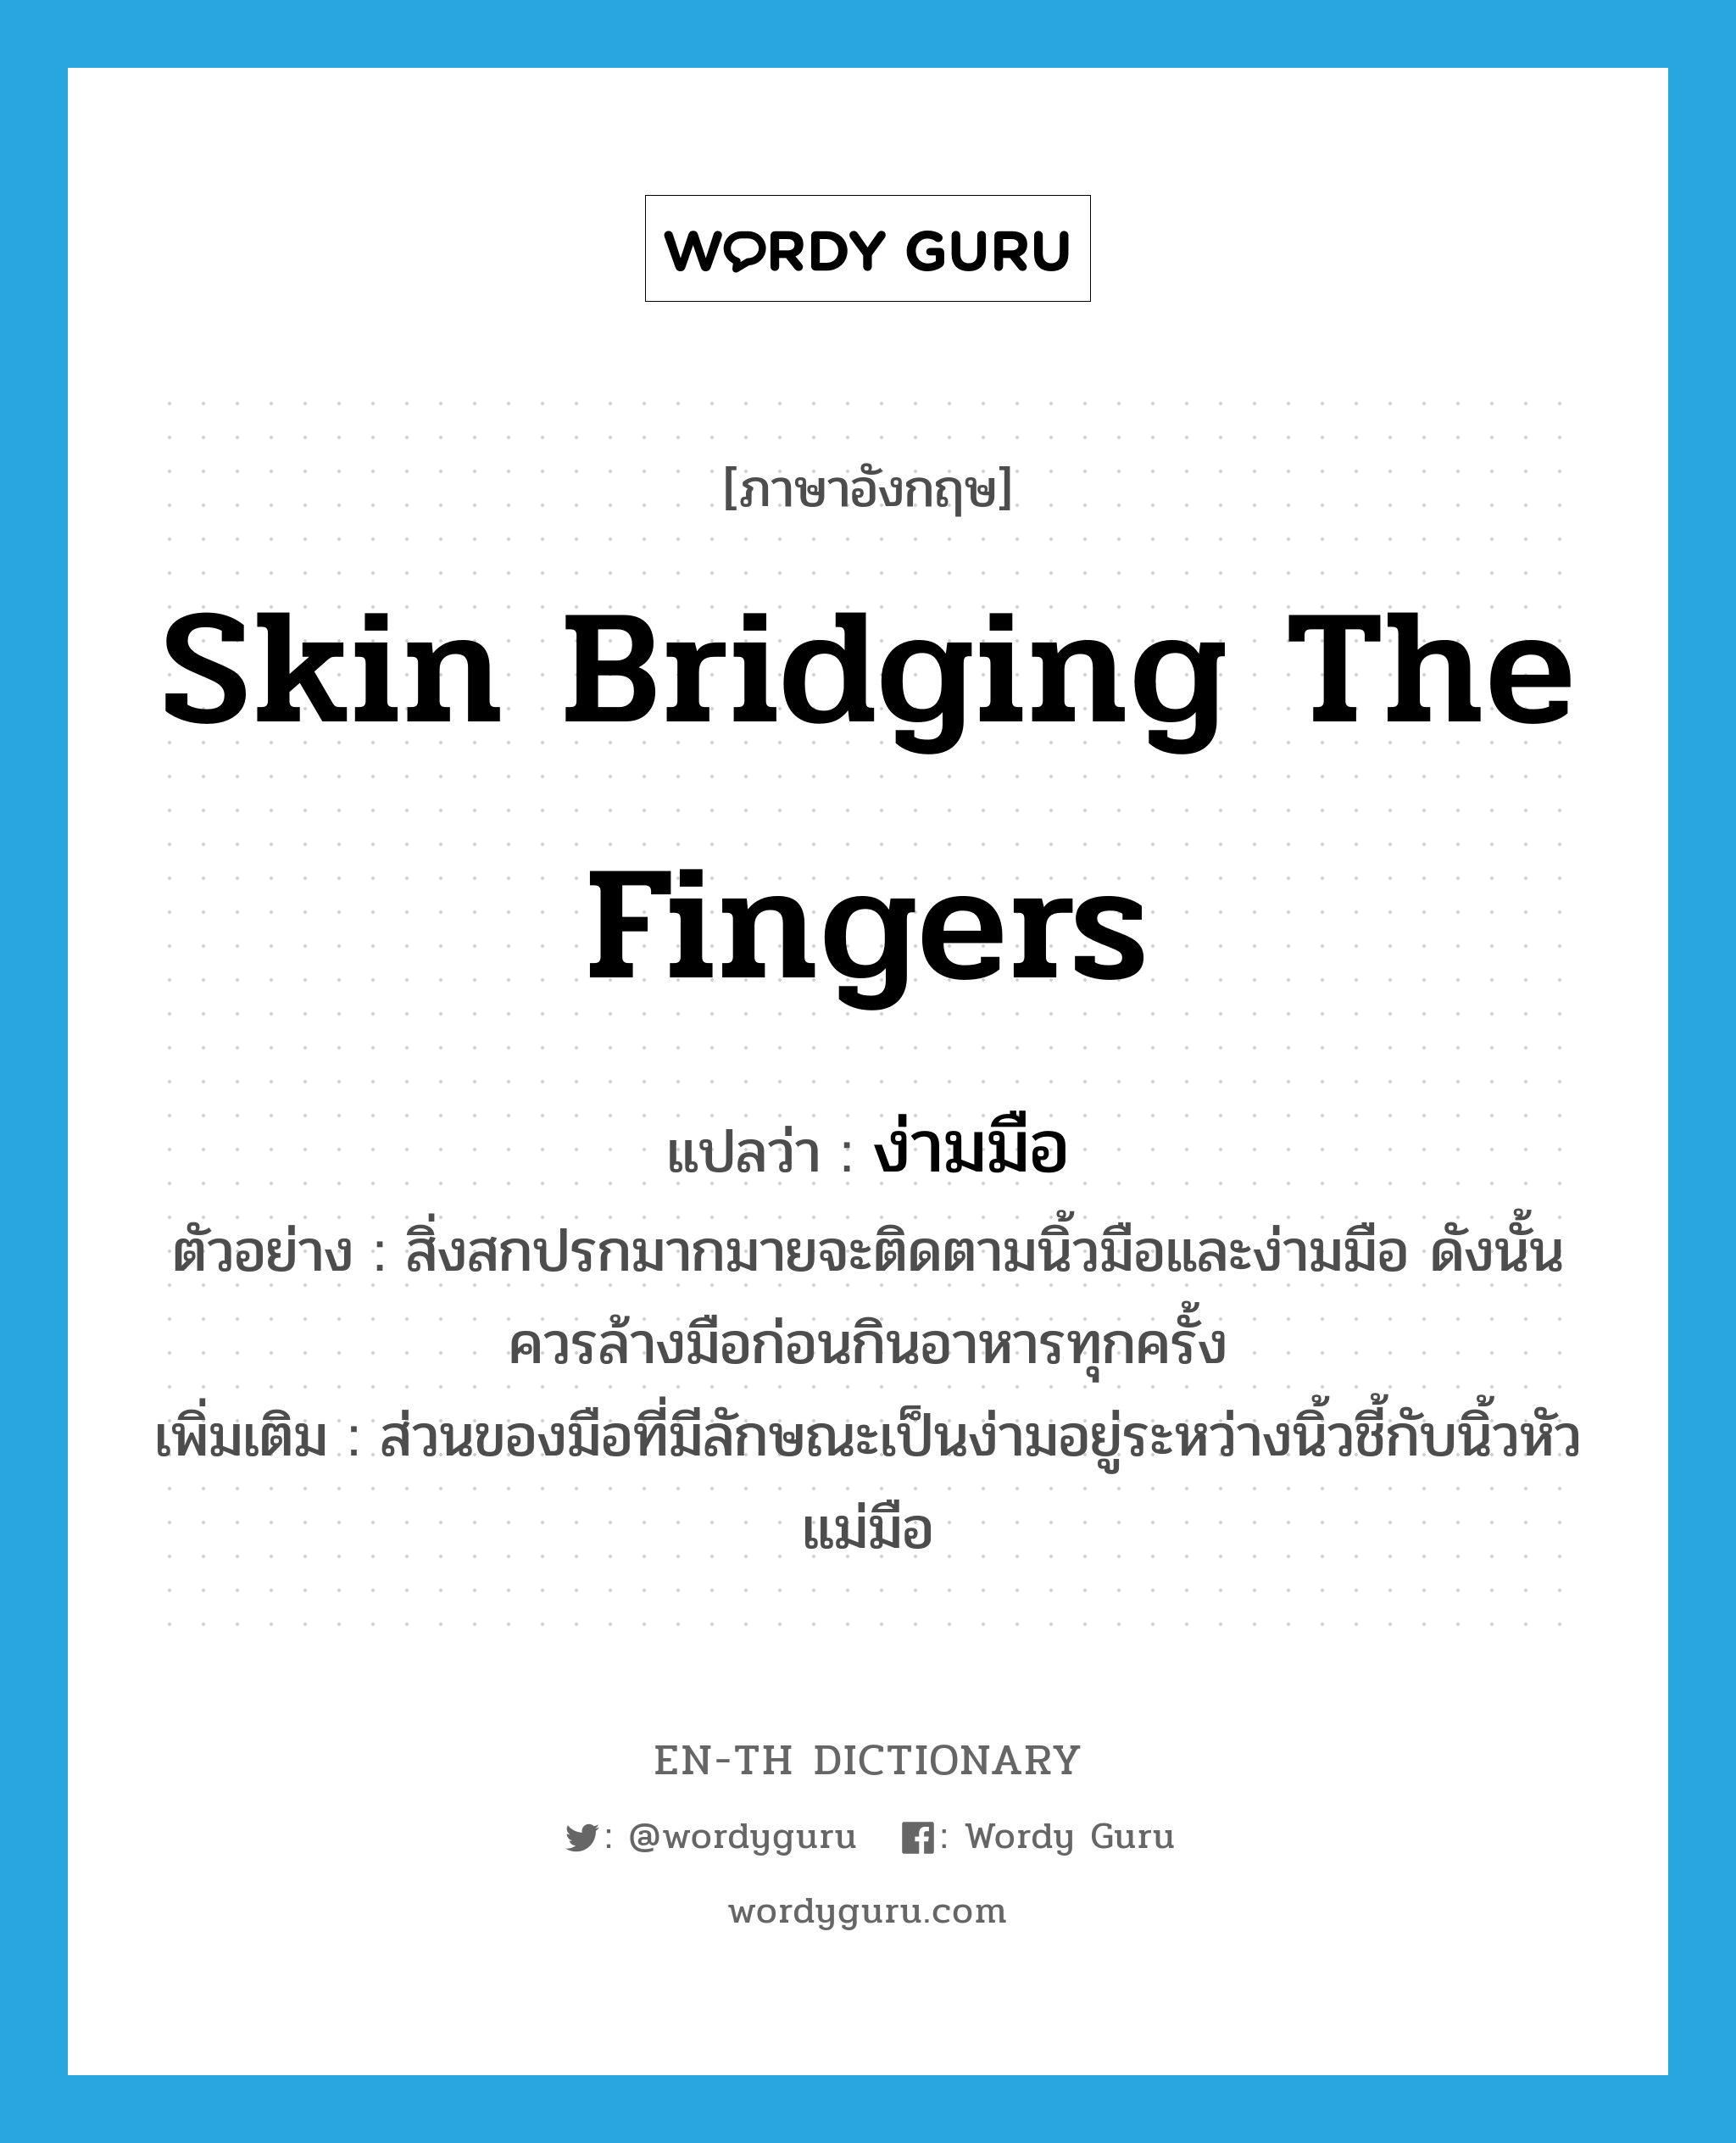 ง่ามมือ ภาษาอังกฤษ?, คำศัพท์ภาษาอังกฤษ ง่ามมือ แปลว่า skin bridging the fingers ประเภท N ตัวอย่าง สิ่งสกปรกมากมายจะติดตามนิ้วมือและง่ามมือ ดังนั้นควรล้างมือก่อนกินอาหารทุกครั้ง เพิ่มเติม ส่วนของมือที่มีลักษณะเป็นง่ามอยู่ระหว่างนิ้วชี้กับนิ้วหัวแม่มือ หมวด N